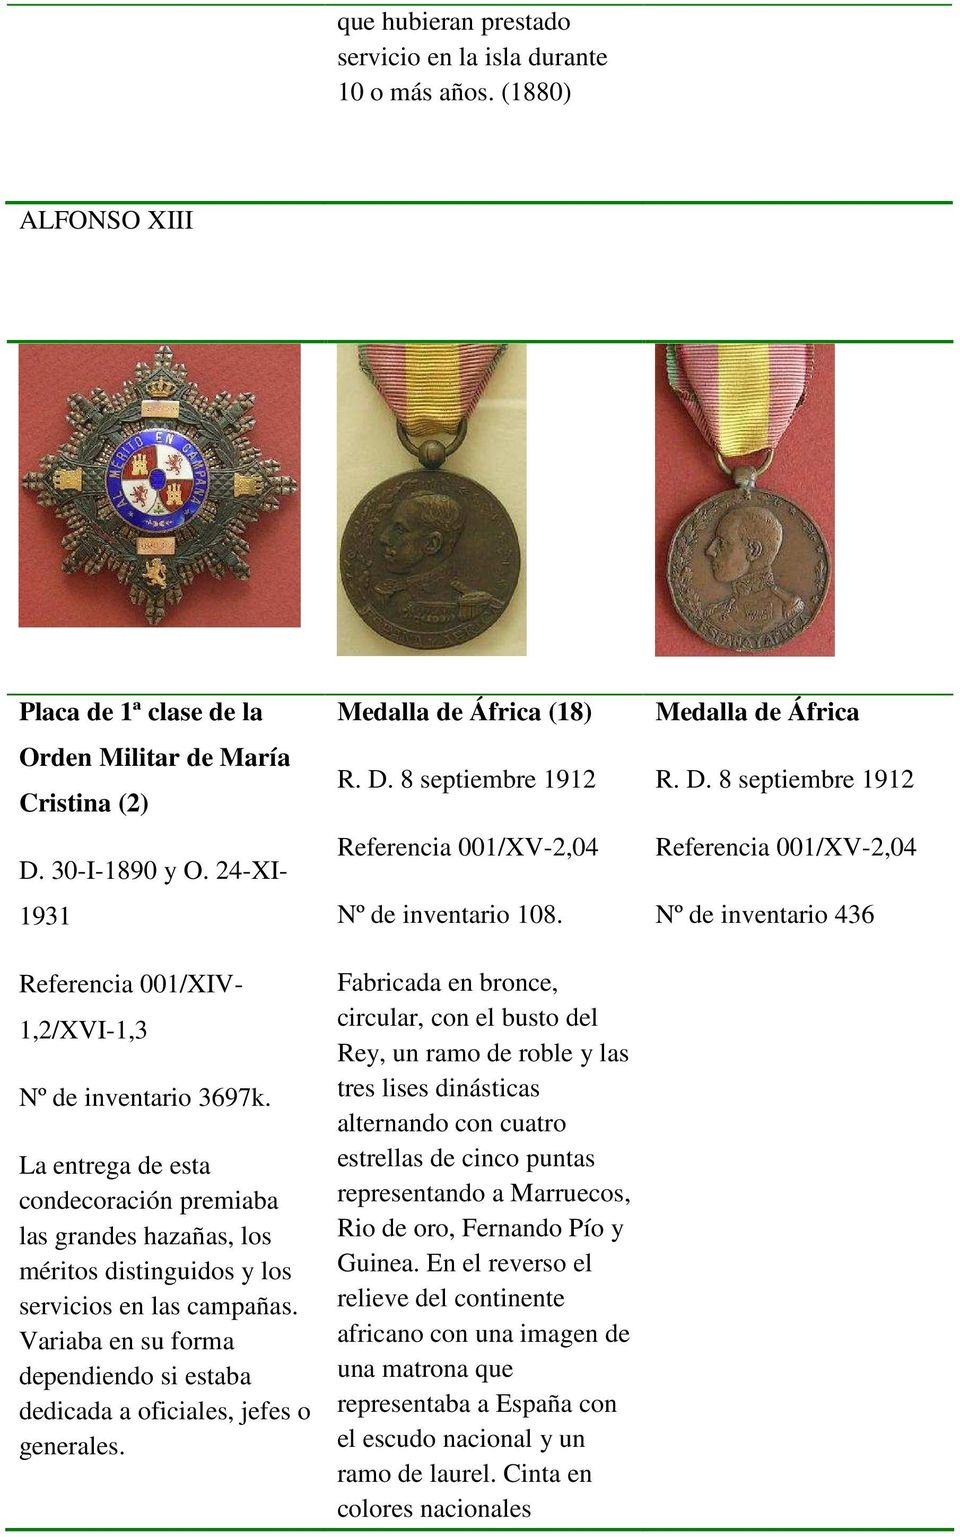 Variaba en su forma dependiendo si estaba dedicada a oficiales, jefes o generales. Medalla de África (18) R. D. 8 septiembre 1912 Referencia 001/XV-2,04 Nº de inventario 108.